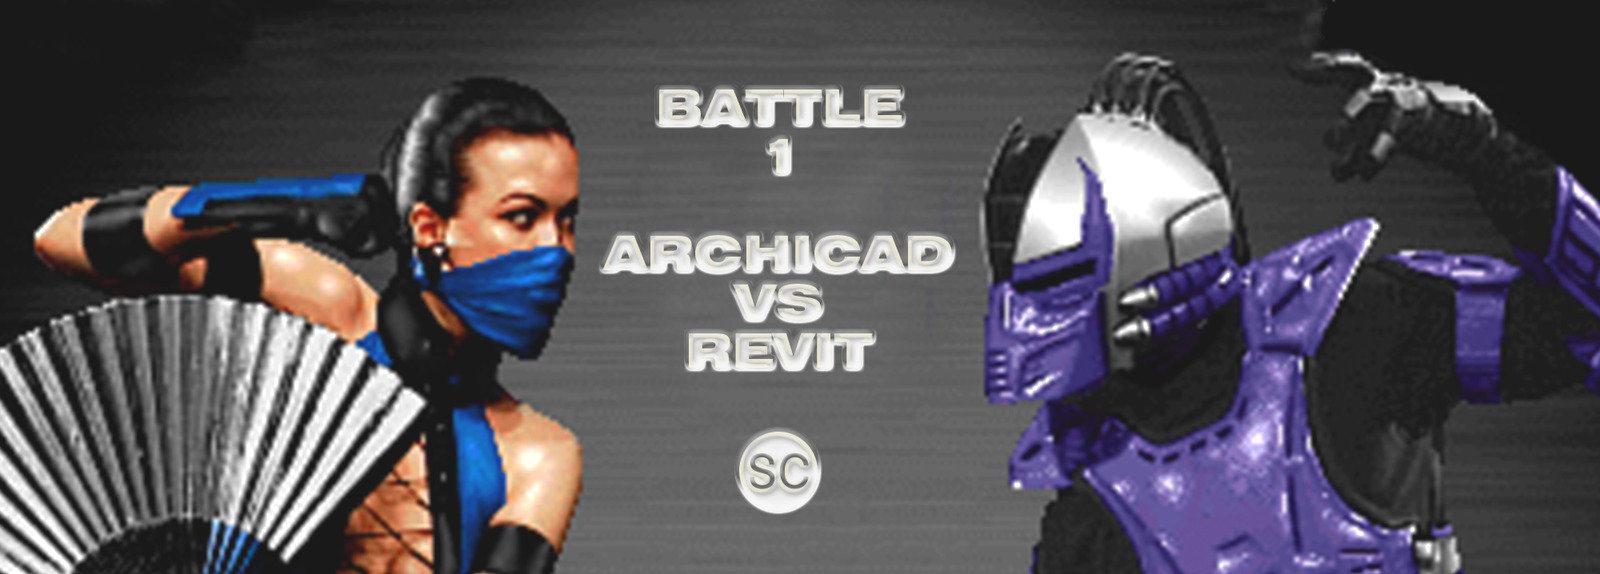 archicad versus revit